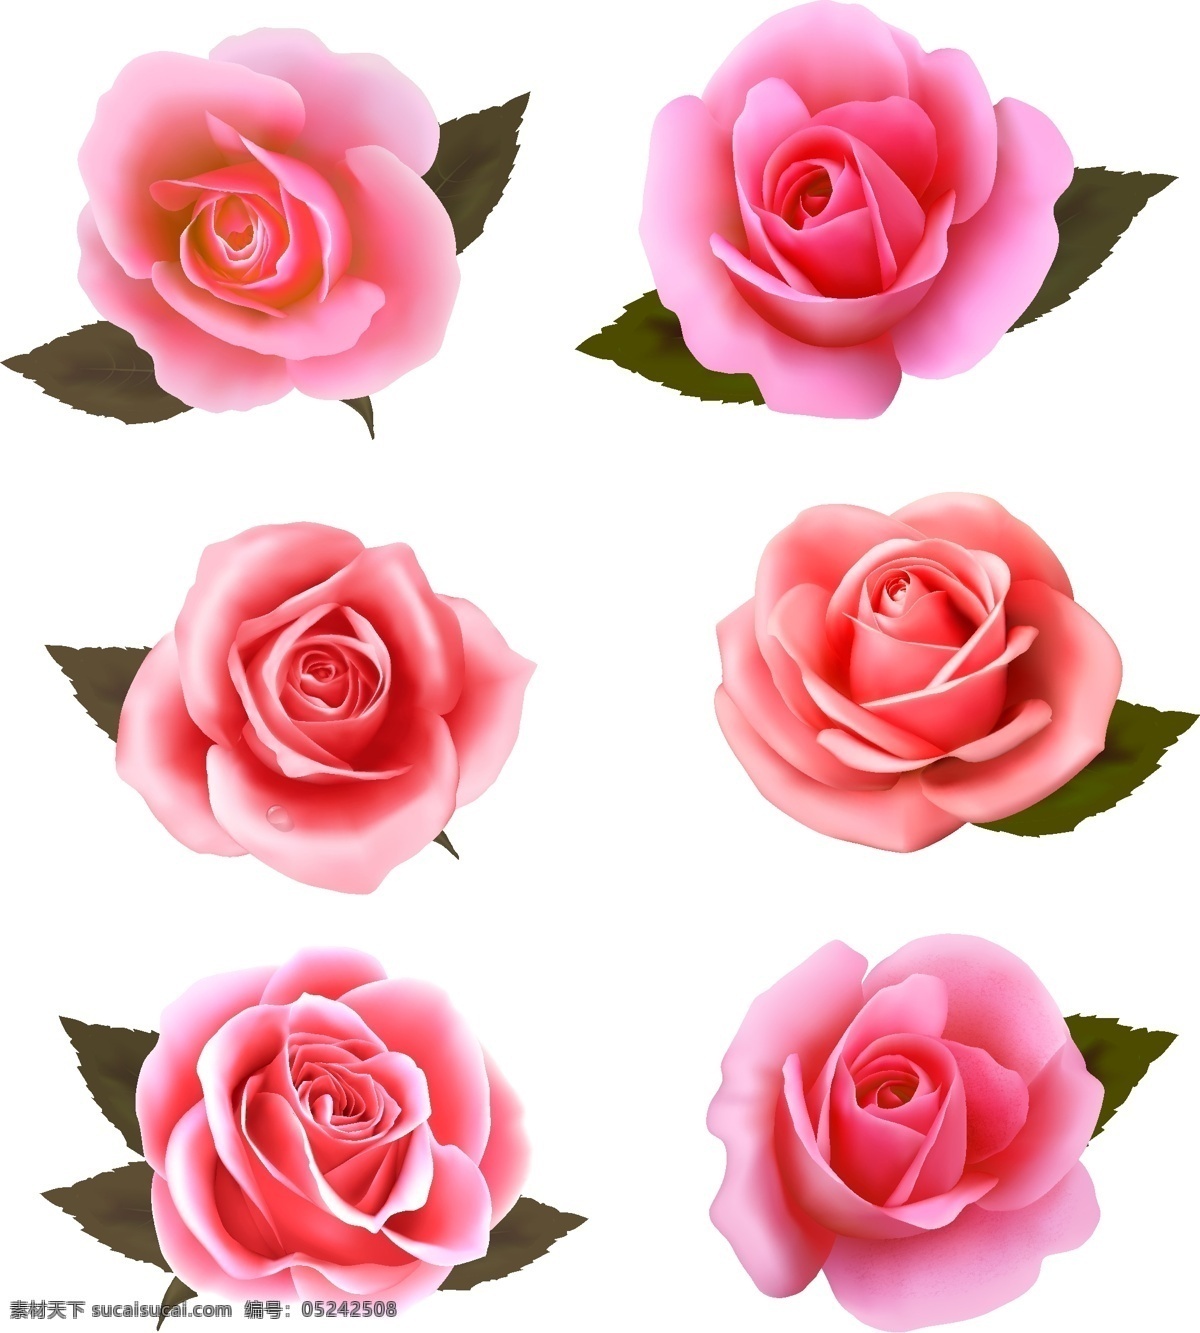 创意 矢量 玫瑰 卡片 贺卡 花瓣 花朵 矢量素材 底纹背景 装饰背景 姿态